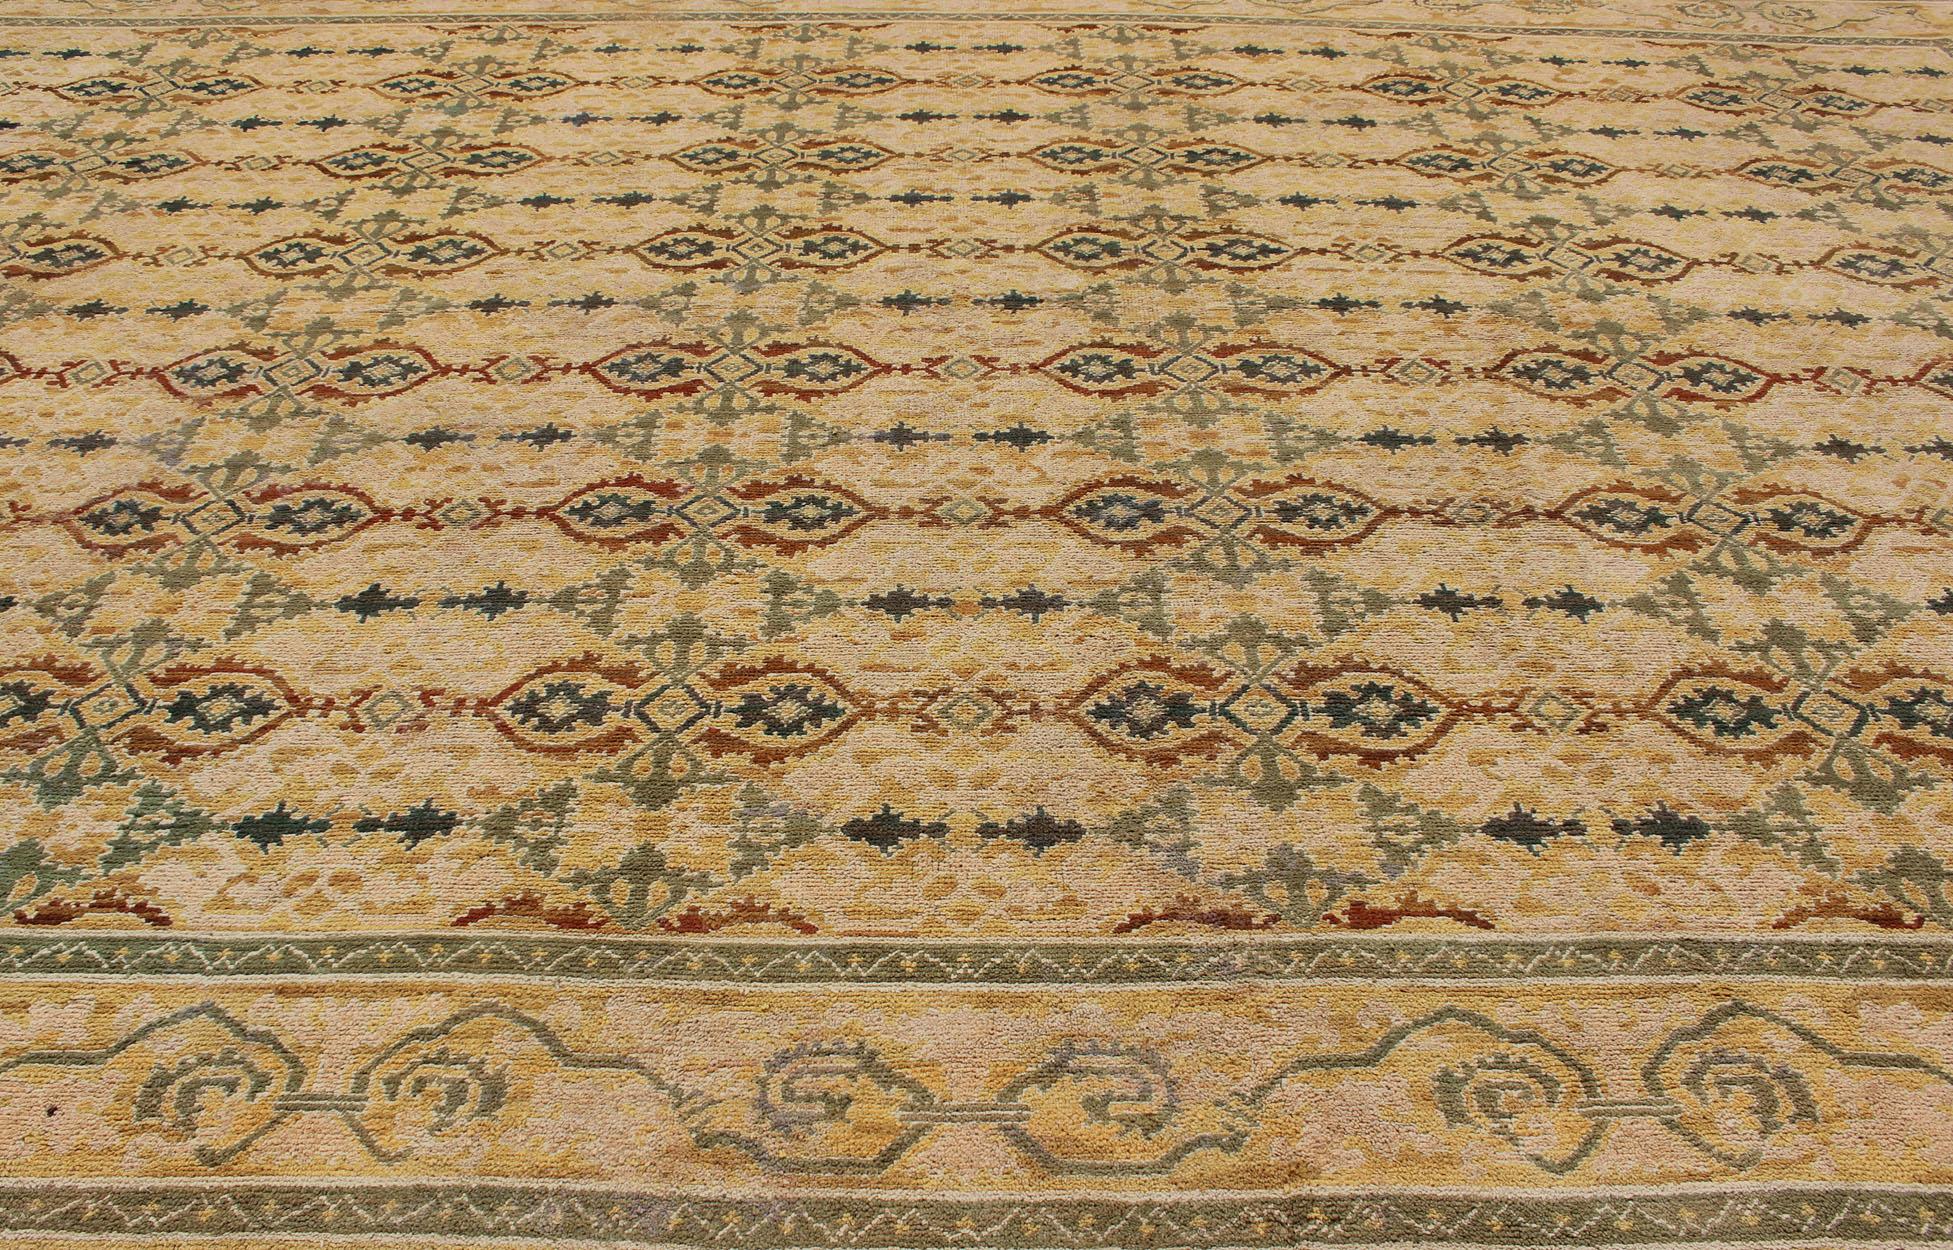 Grandioser spanischer Teppich in Gold, Gelb, Grün und Bastfarben. Teppiche, H8-0602. Großer spanischer Vintage-Teppich. Großer spanischer Teppich.
Dieses goldene Meisterwerk wurde zu Beginn des 20. Jahrhunderts in Spanien in fachmännischer